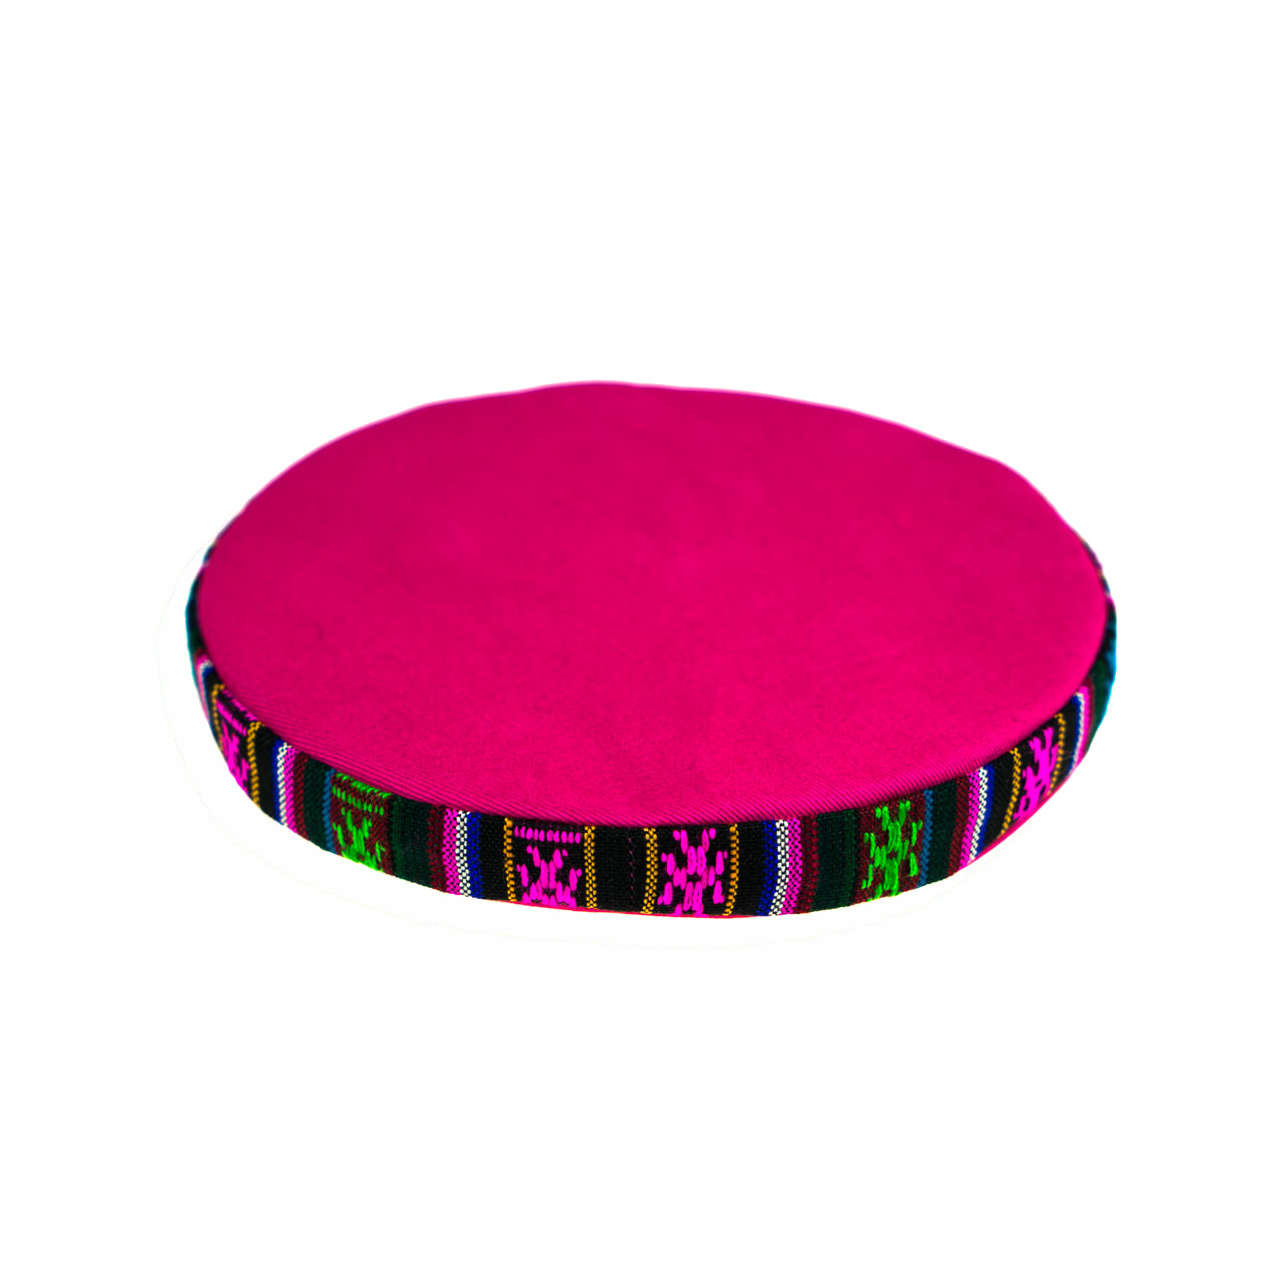 Runde Unterlage für Klangschale pink mit bunter Borte, Durchmesser 15 cm, Seitenansicht